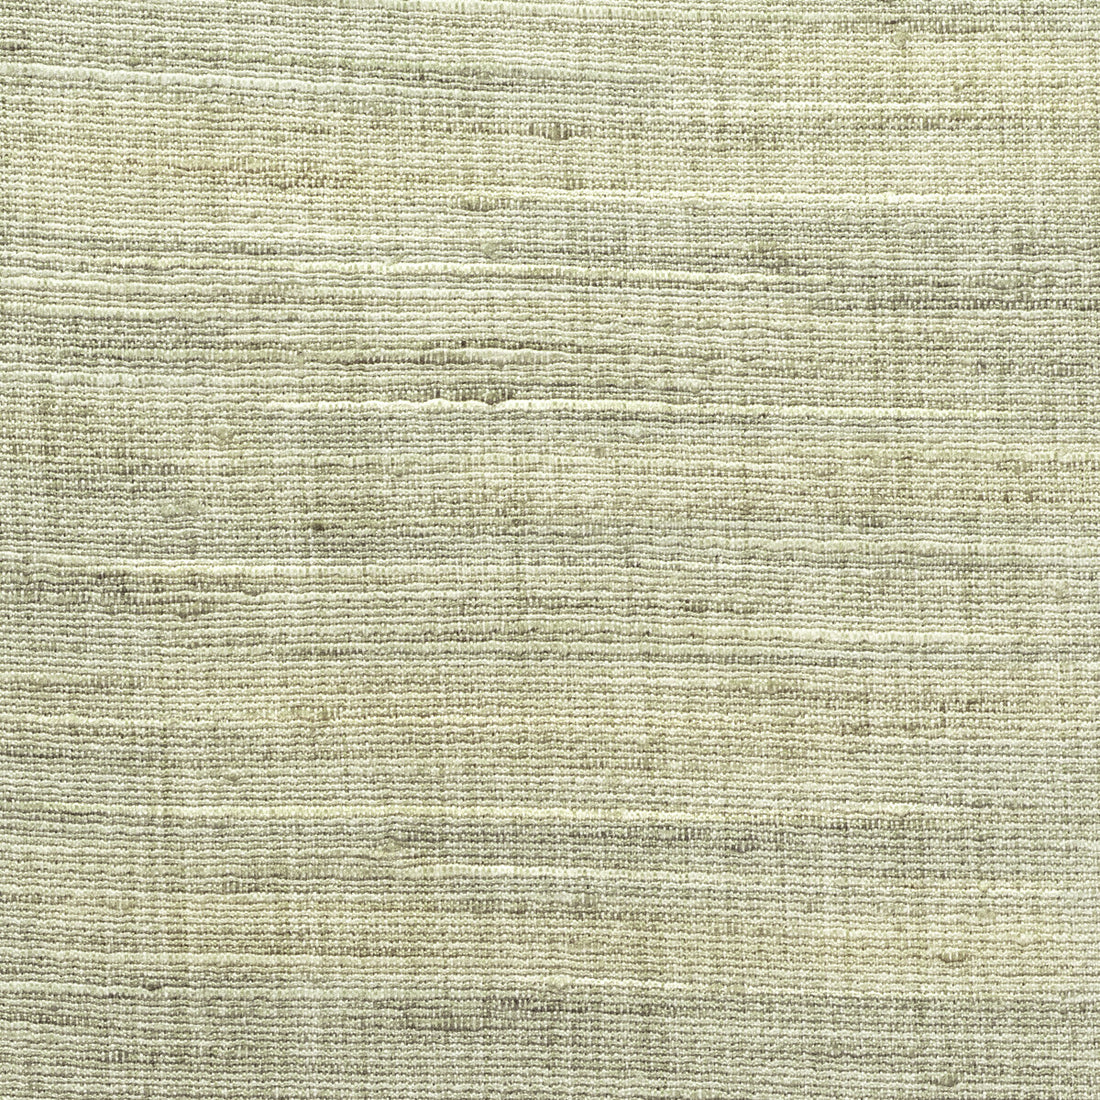 Kravet Basics fabric in 4852-113 color - pattern 4852.113.0 - by Kravet Basics